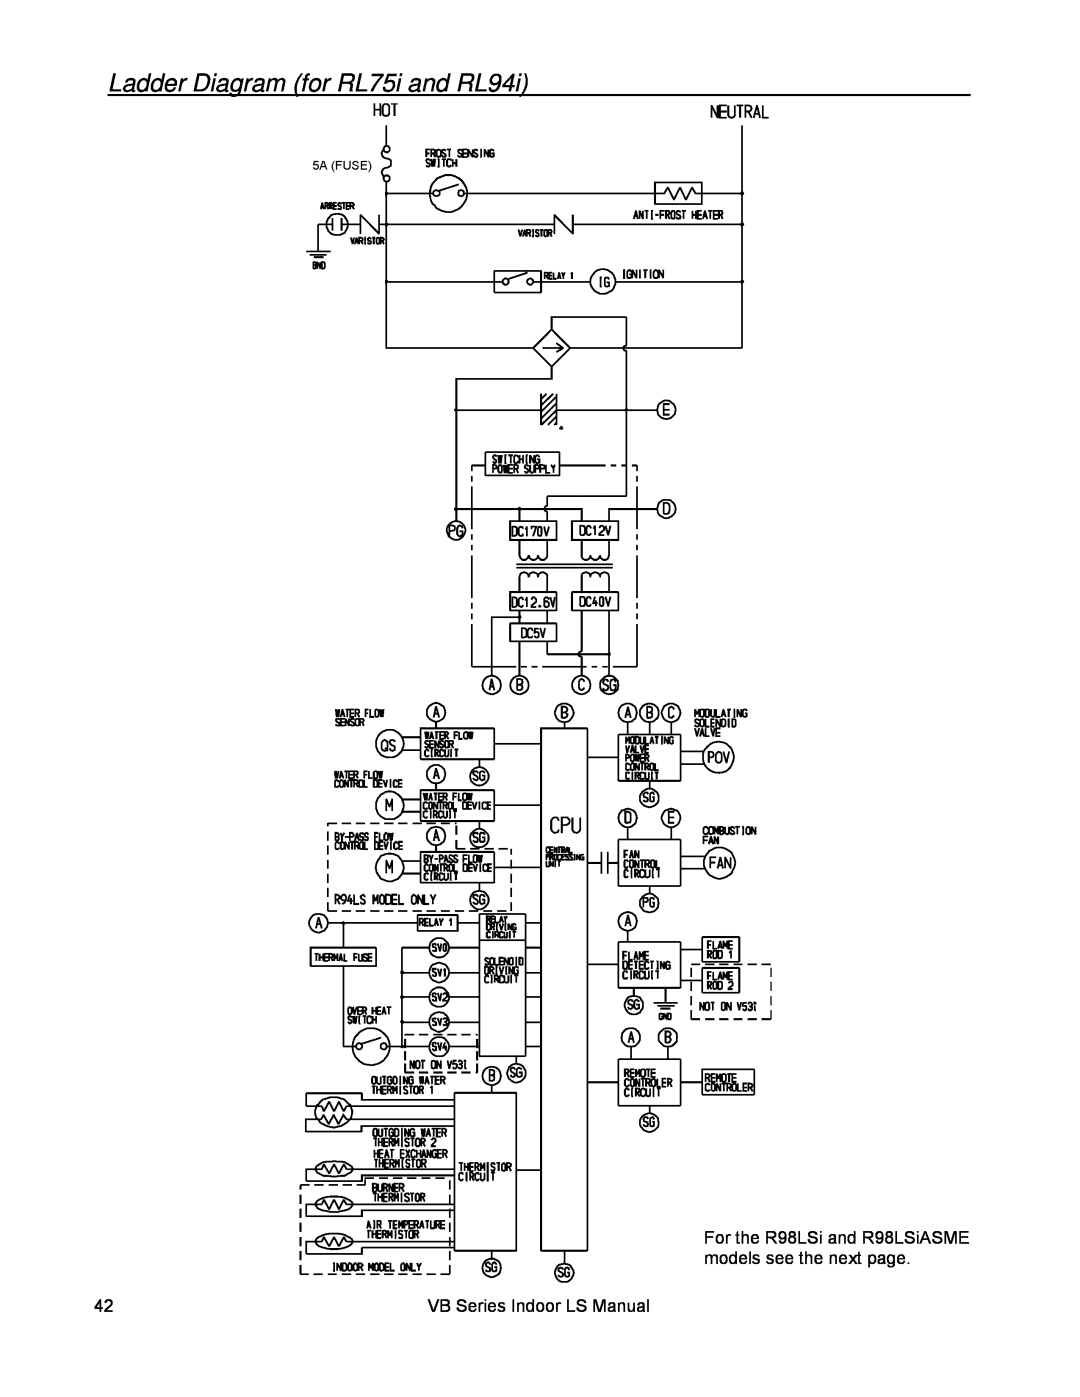 Rinnai RL94I, RL75I installation manual Ladder Diagram for RL75i and RL94i, VB Series Indoor LS Manual 